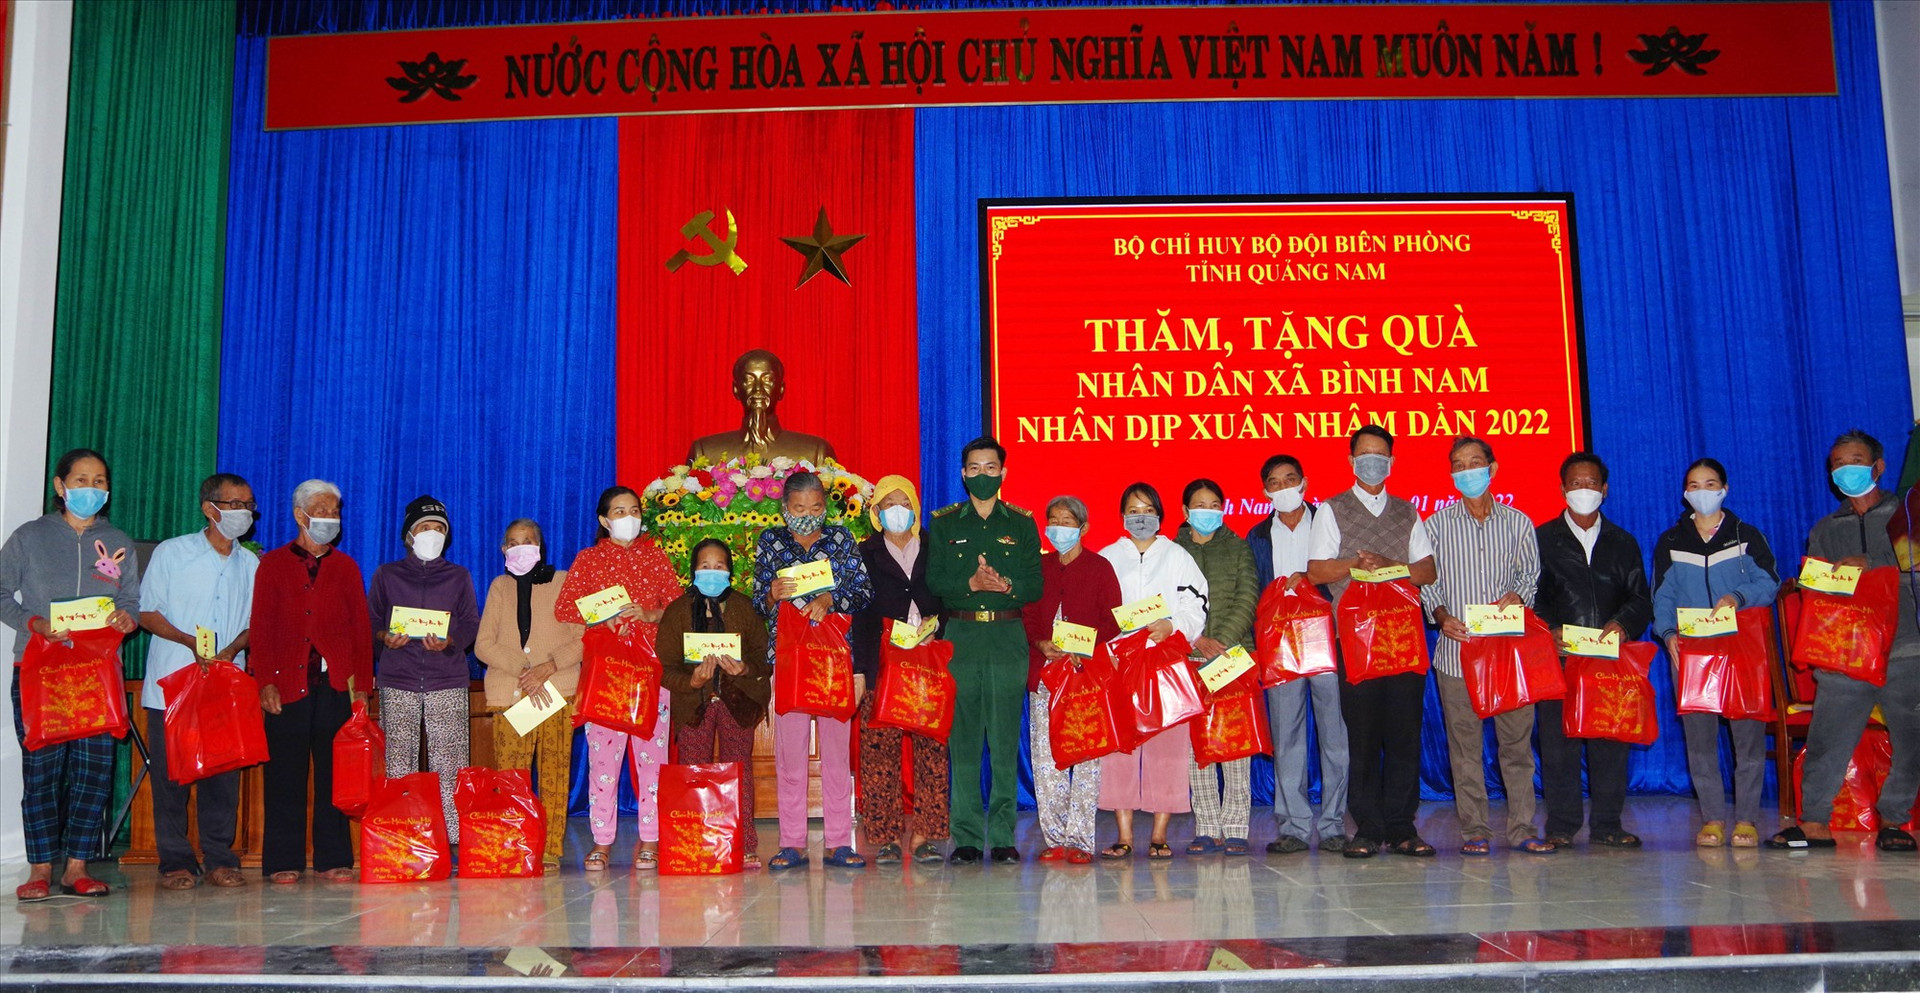 Đại tá Hoàng Văn Mẫn tặng quà cho các hộ gia đình xã Bình Nam. Ảnh: HUỲNH CHÍN